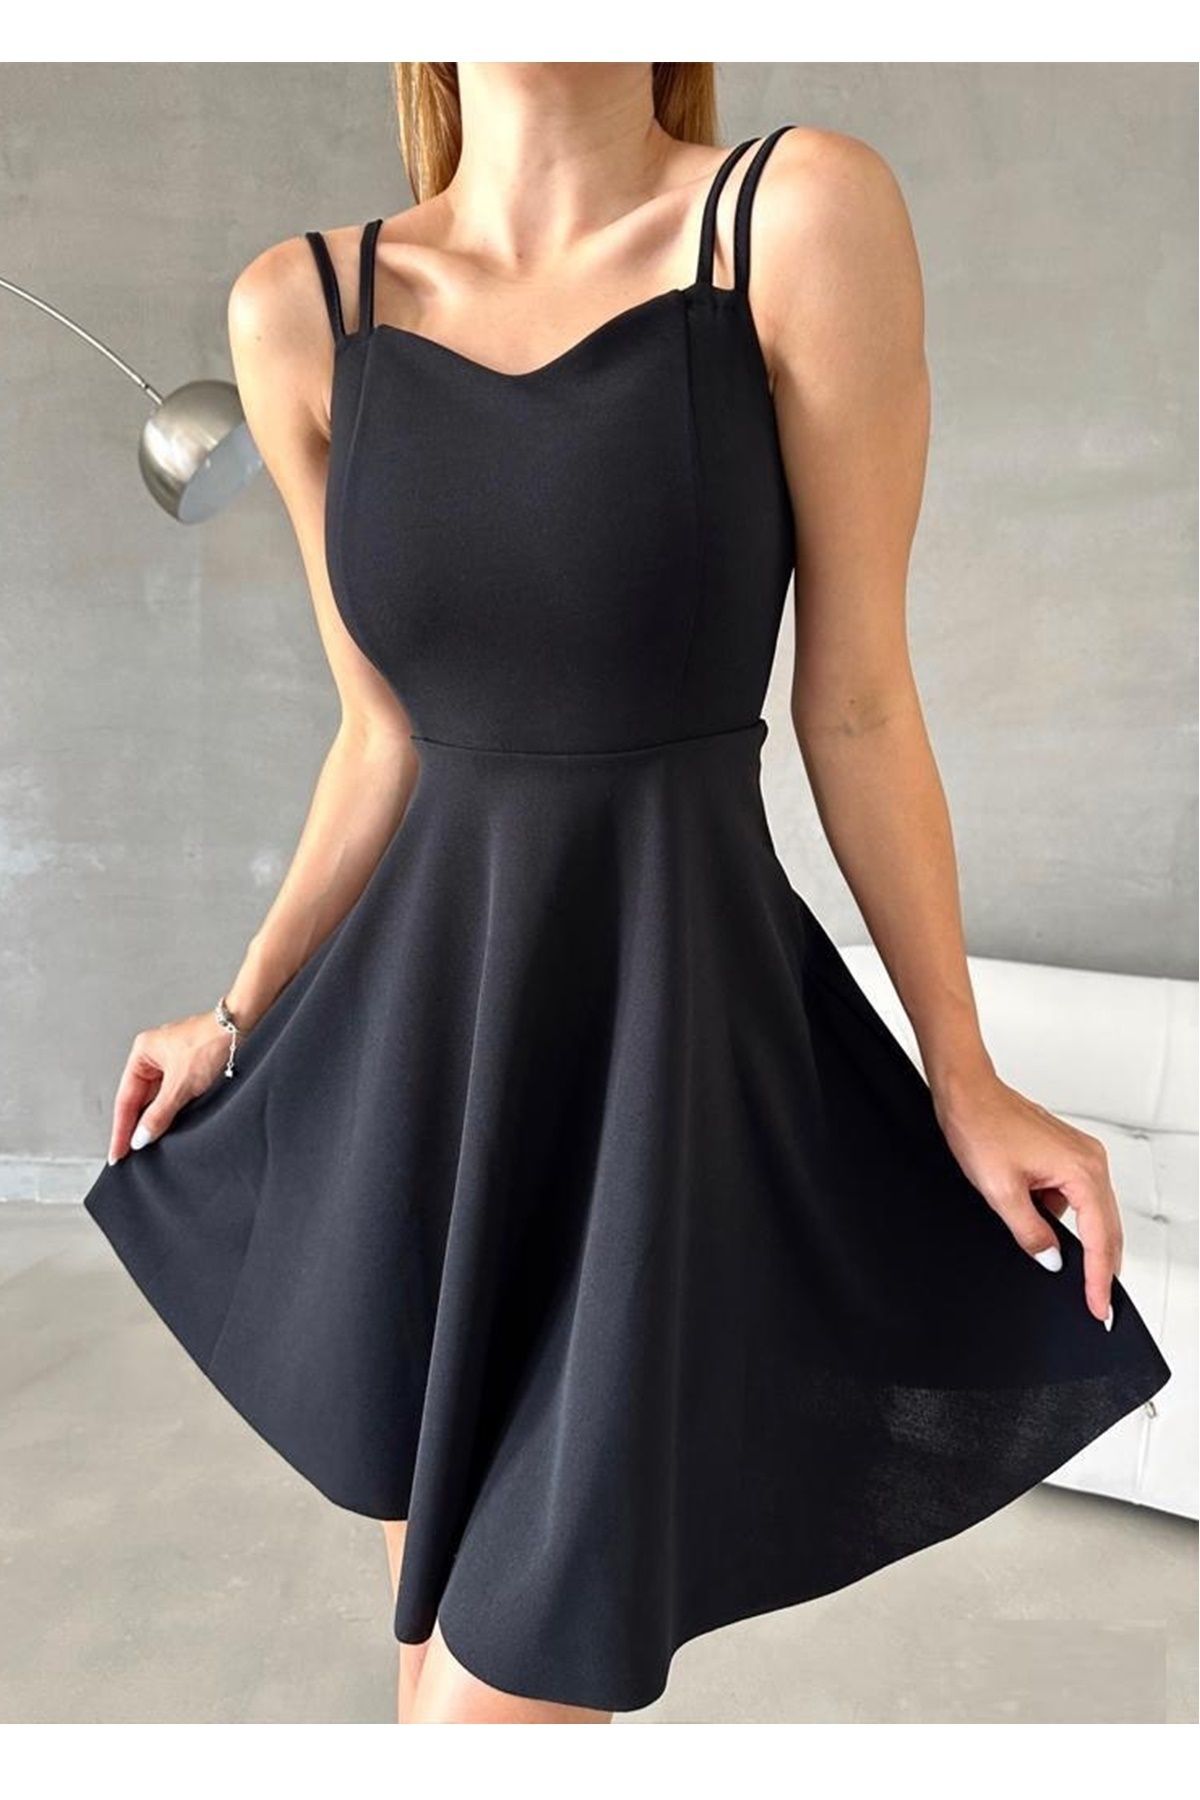 lovebox Kadın Krep Kumaş Degaje Yaka Çift Askı Tasarım Siyah Kloş Mini Abiye Elbise 582130